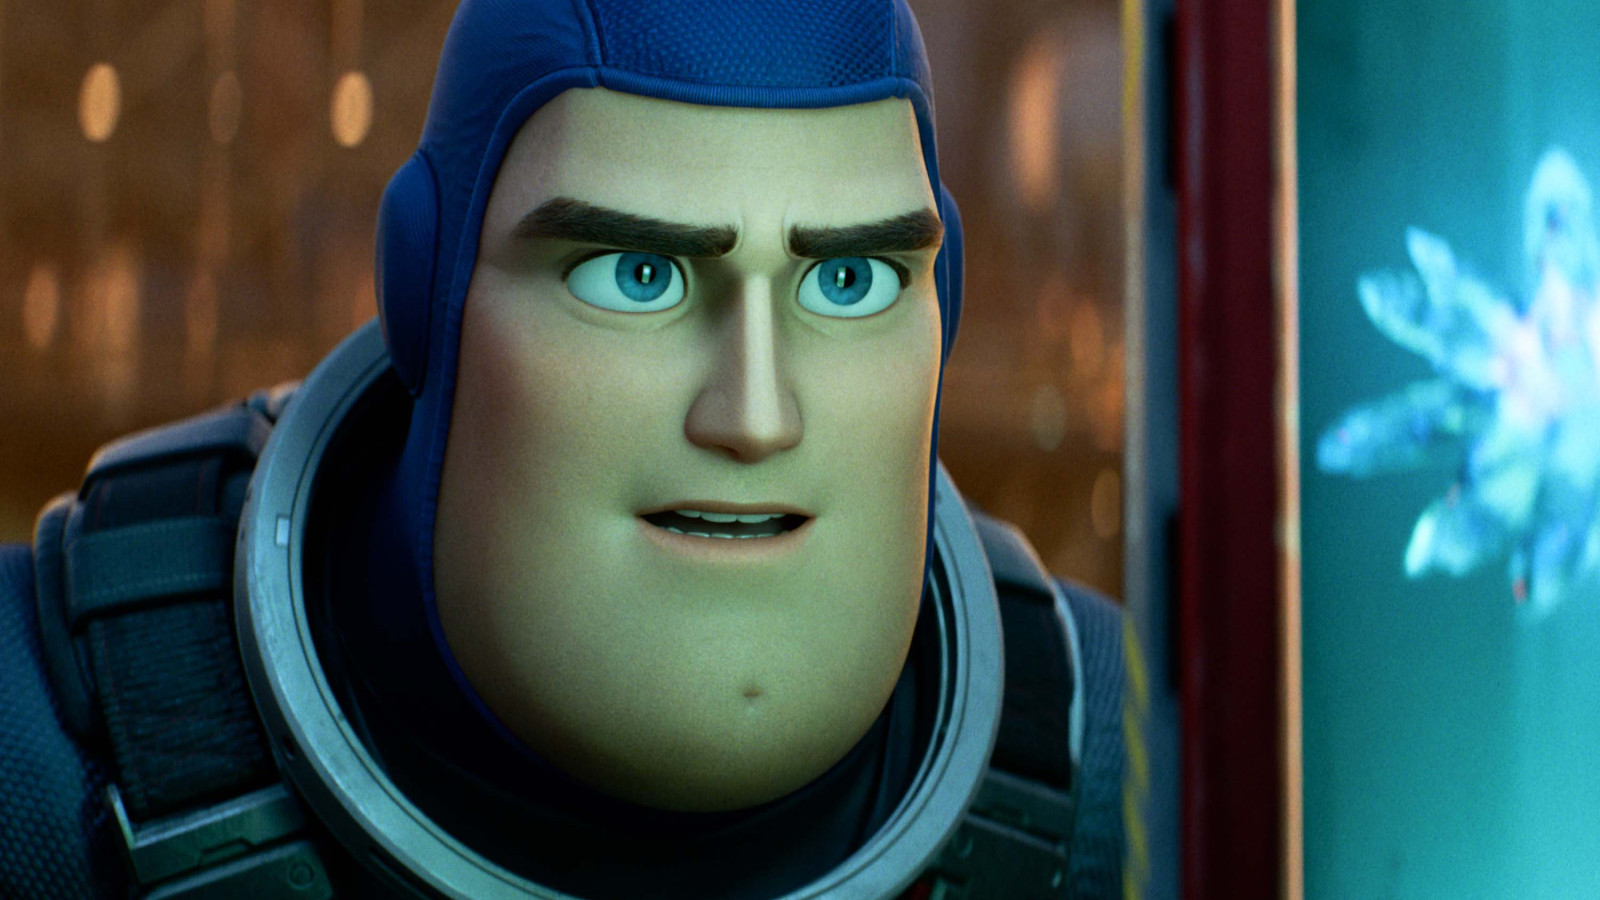 Pixars "Lightyear" nimmt euch mit grandiosem Soundtrack auf intergalaktische Abenteuer